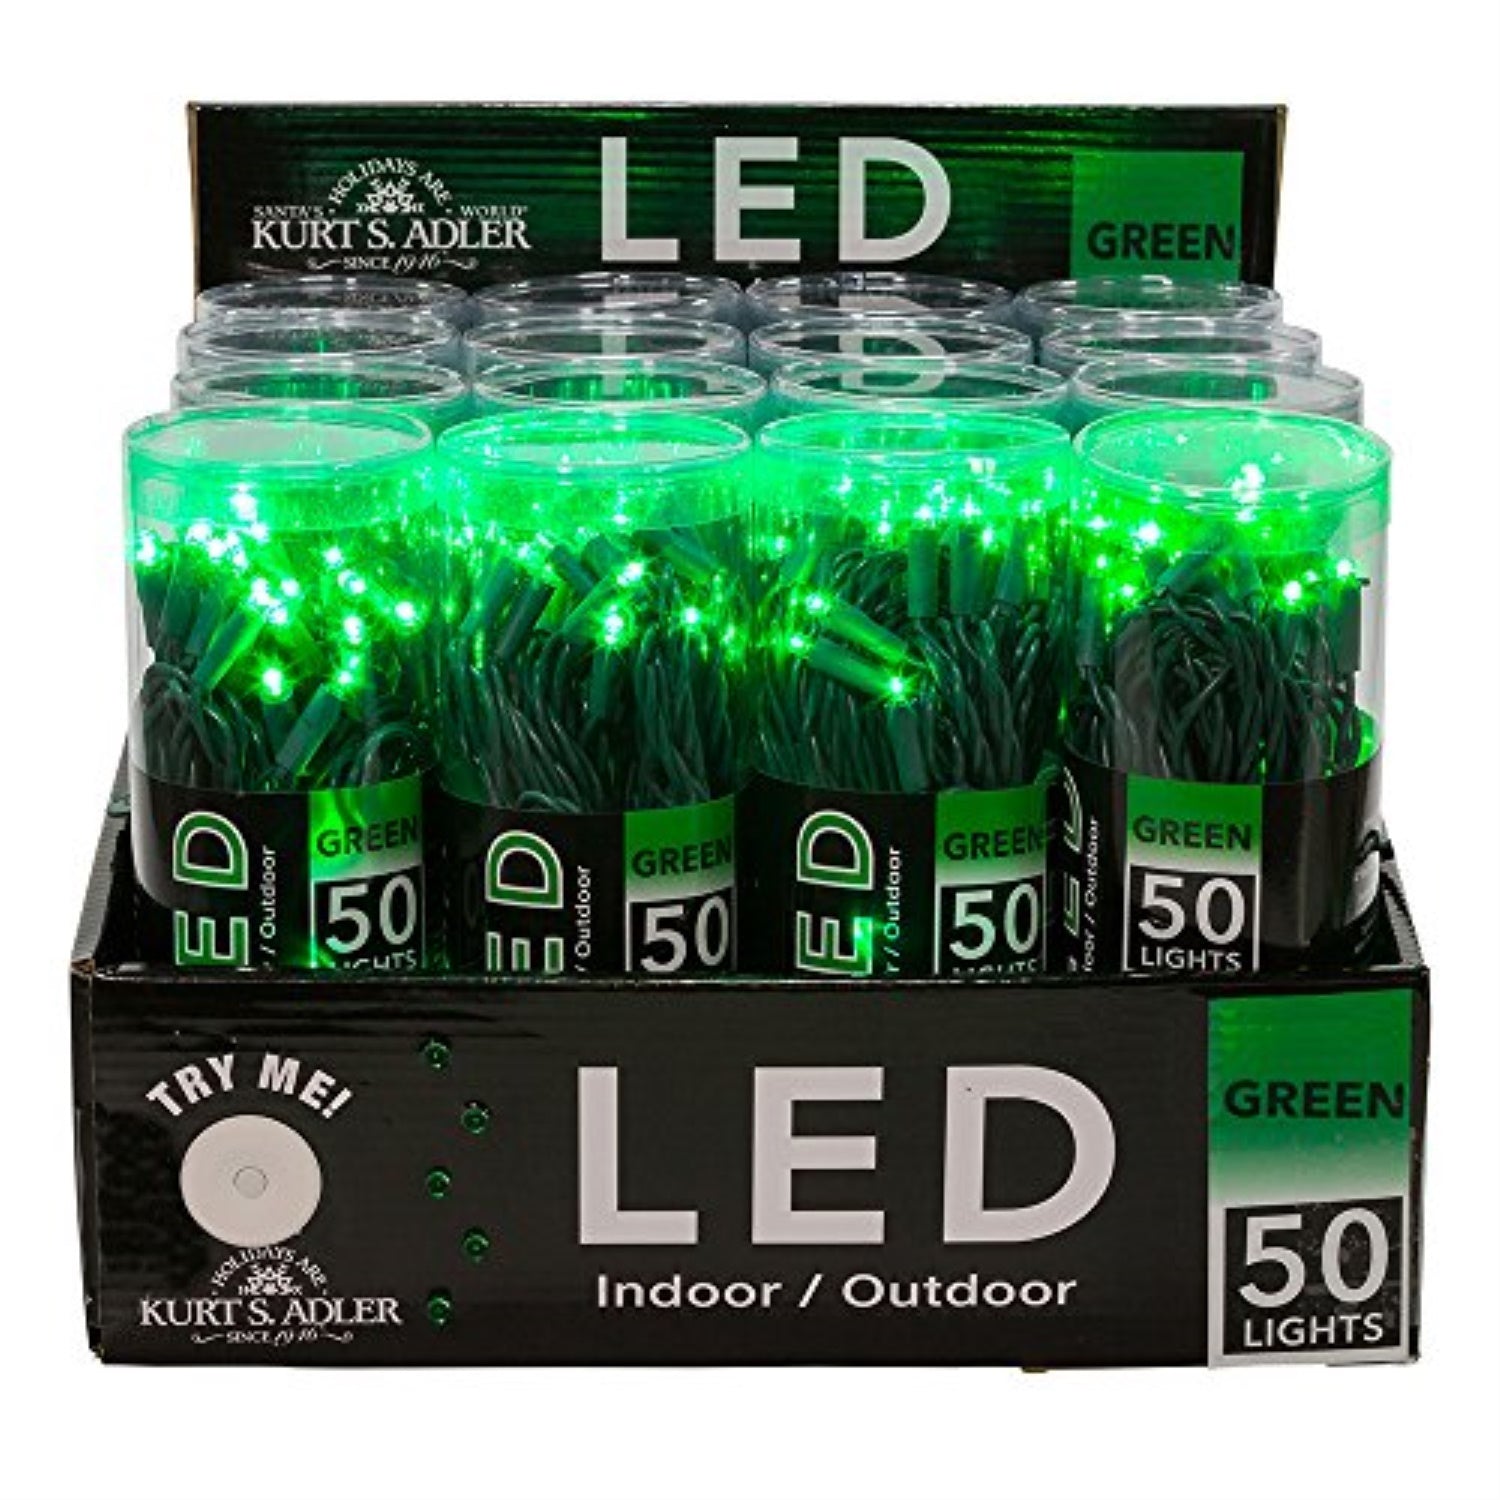 LED Lights and LED Cluster Strands